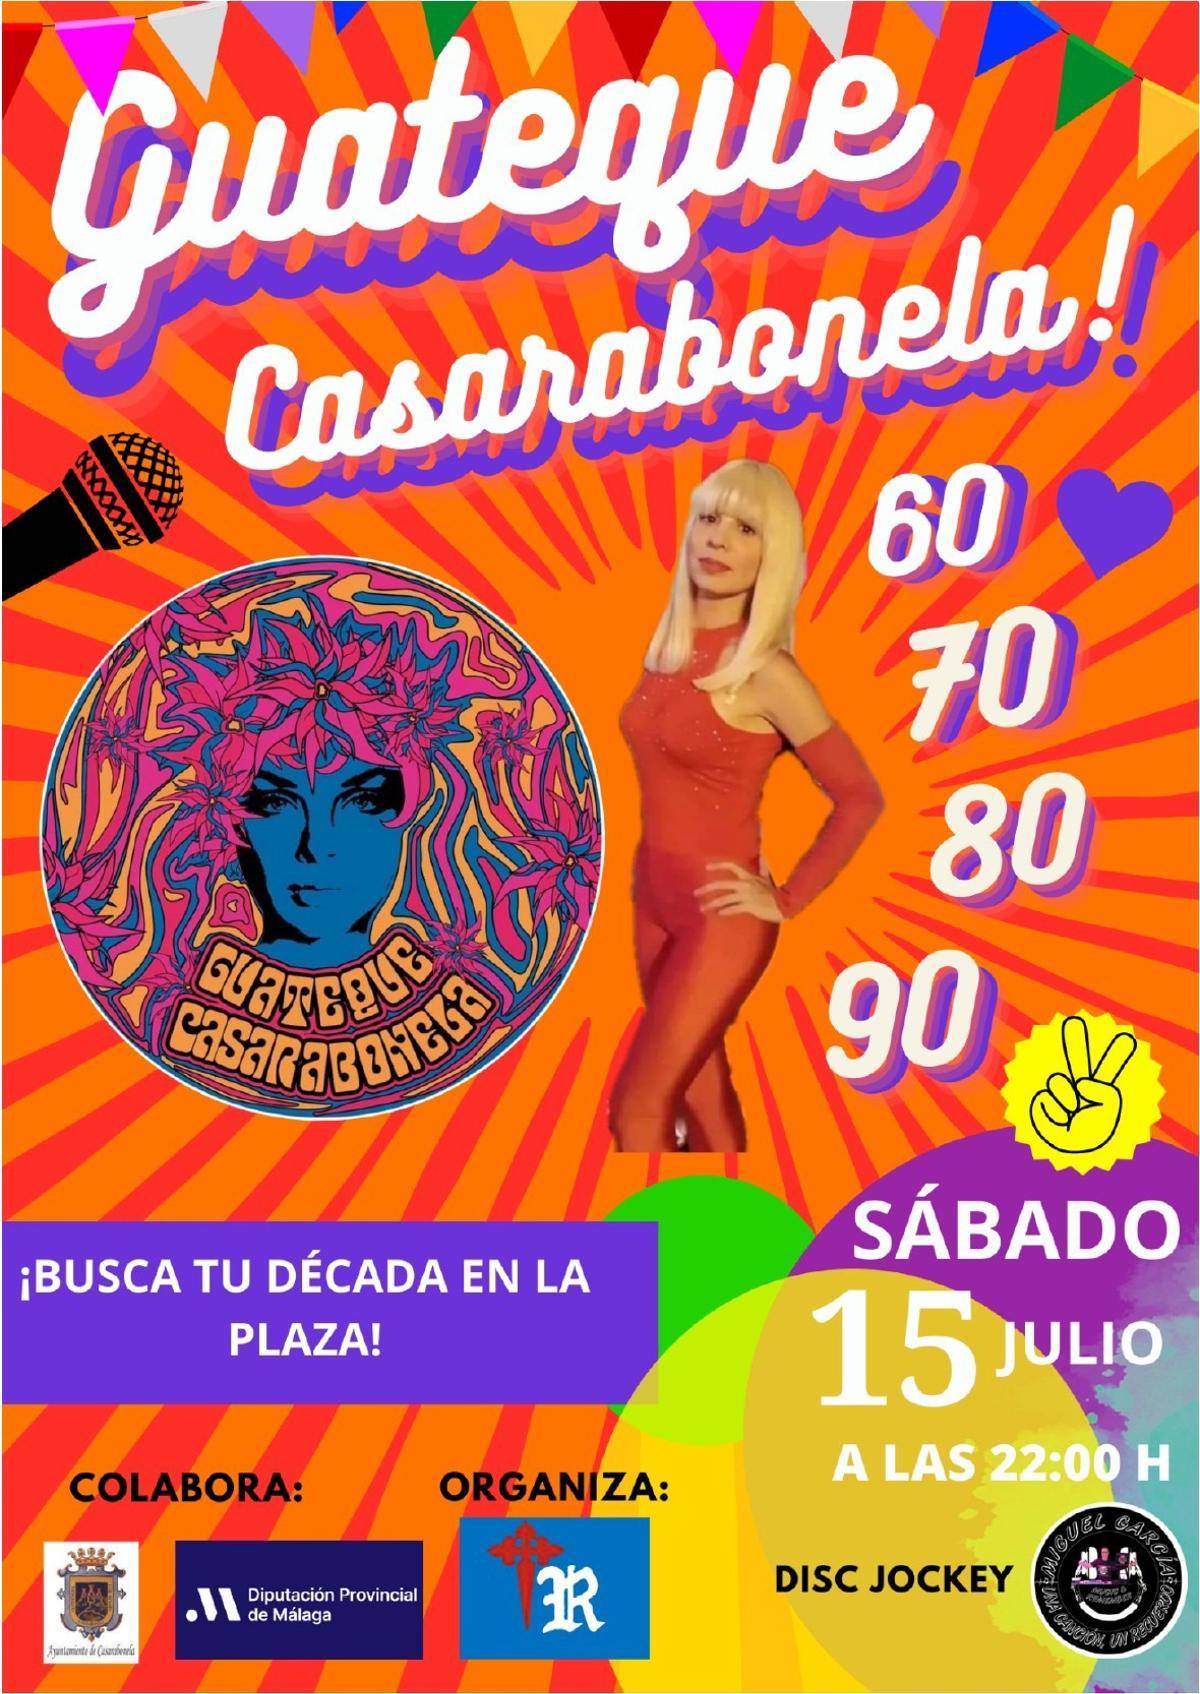 Cartel de El Guateque de Casarabonela, que se celebra el próximo sábado 15 de julio.